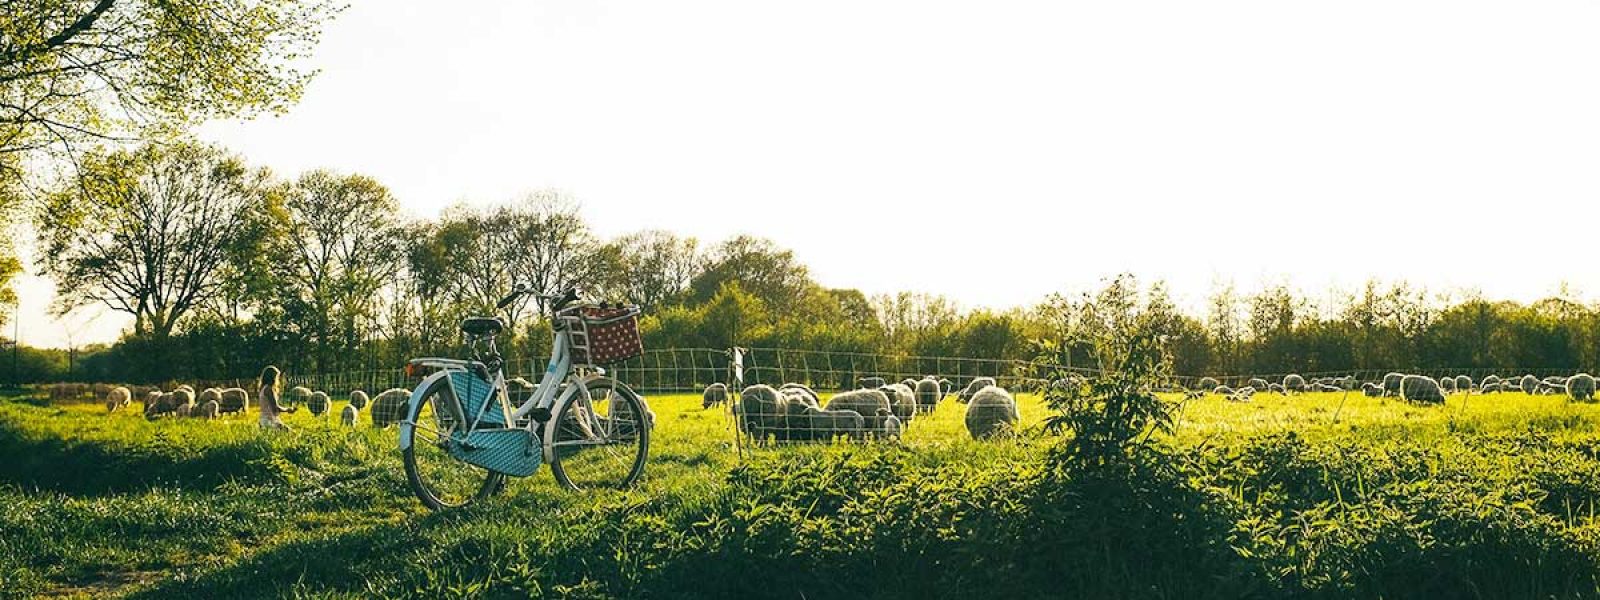 Fiets bij weiland met schapen